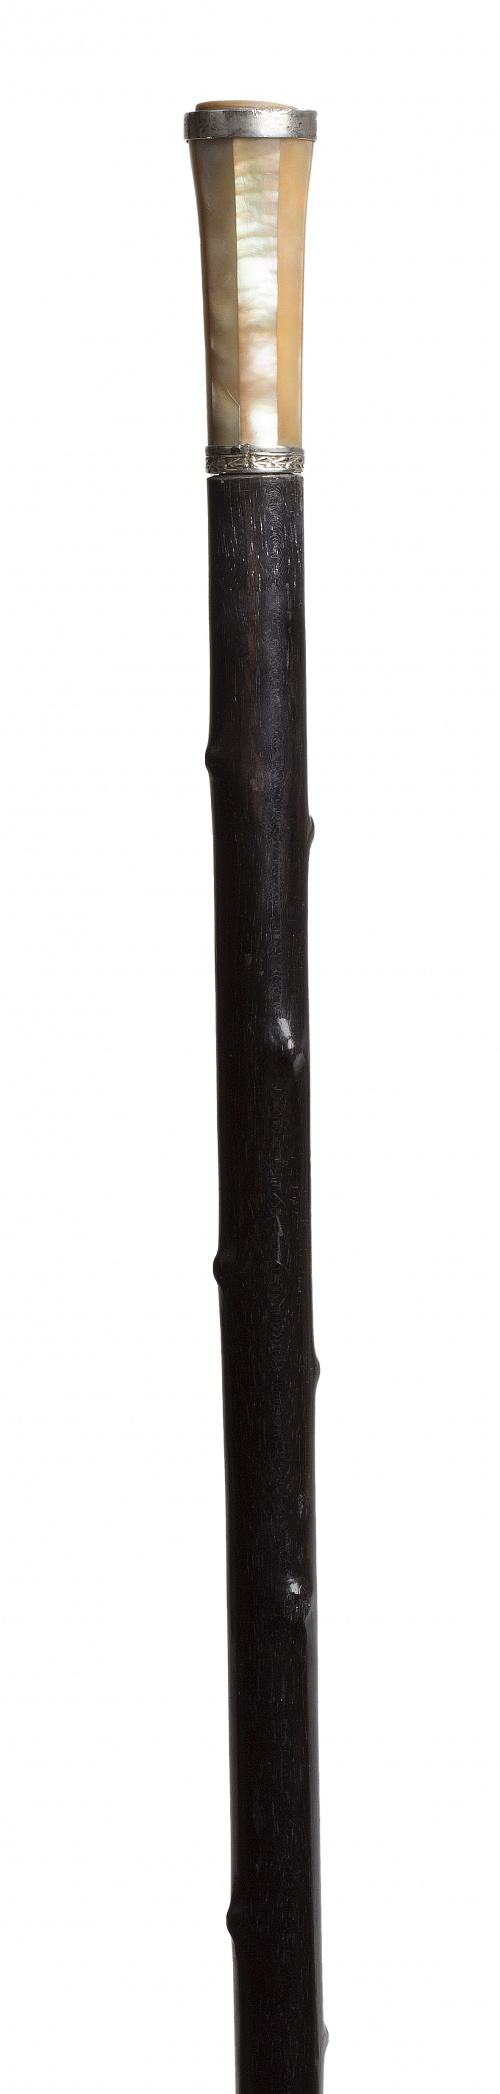 Bastón de madera ebonizada con mago de nácar, S. XIX